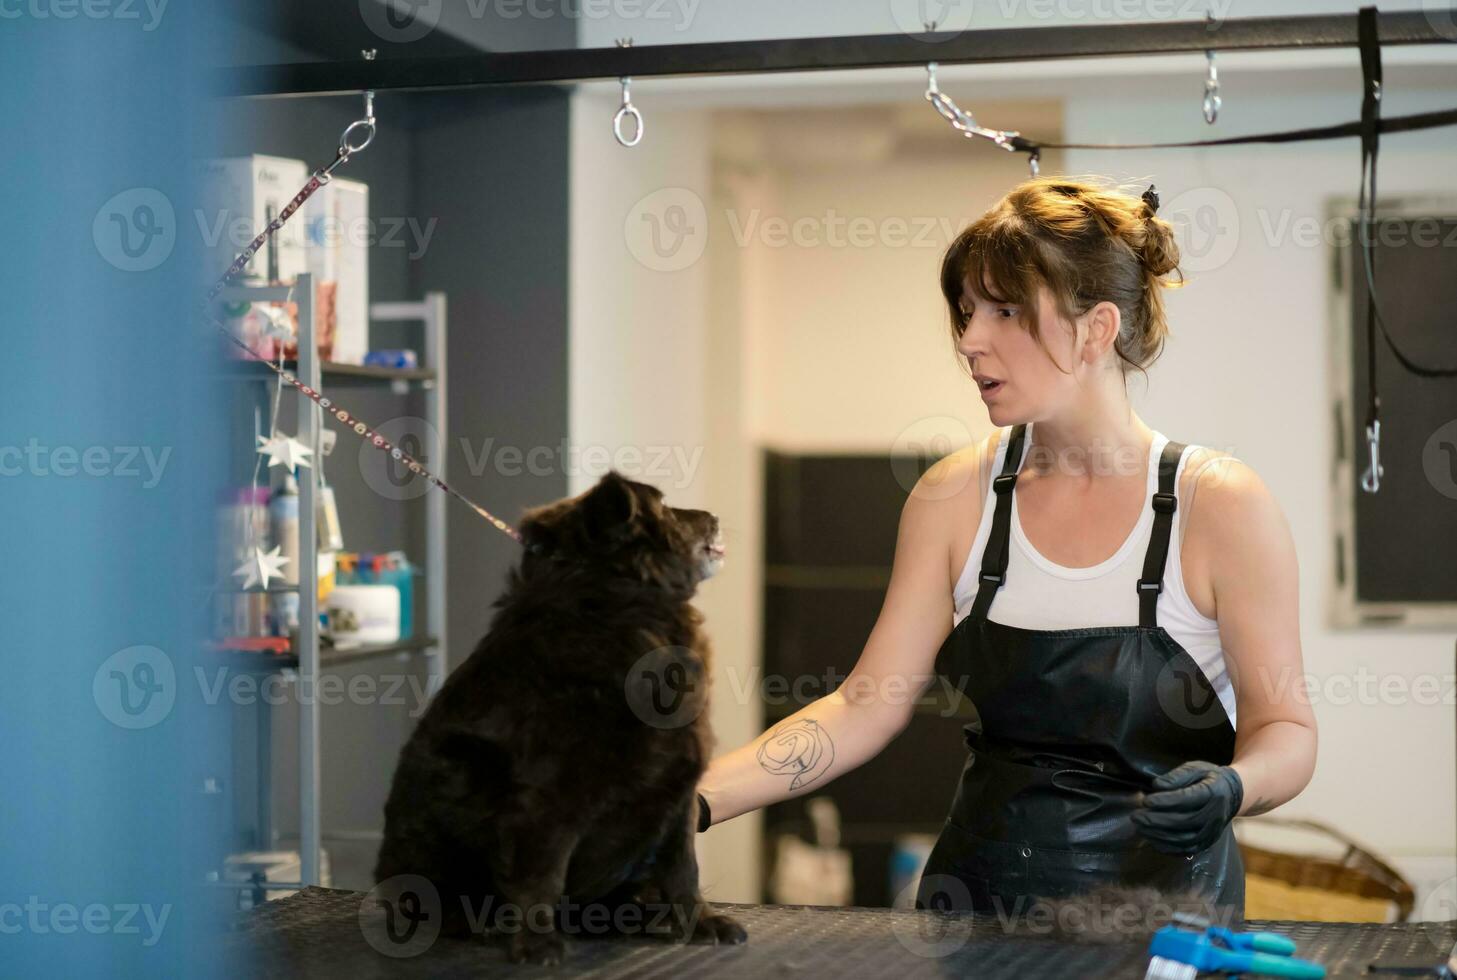 cabeleireira de estimação mulher cortando pele de cachorro preto fofo foto